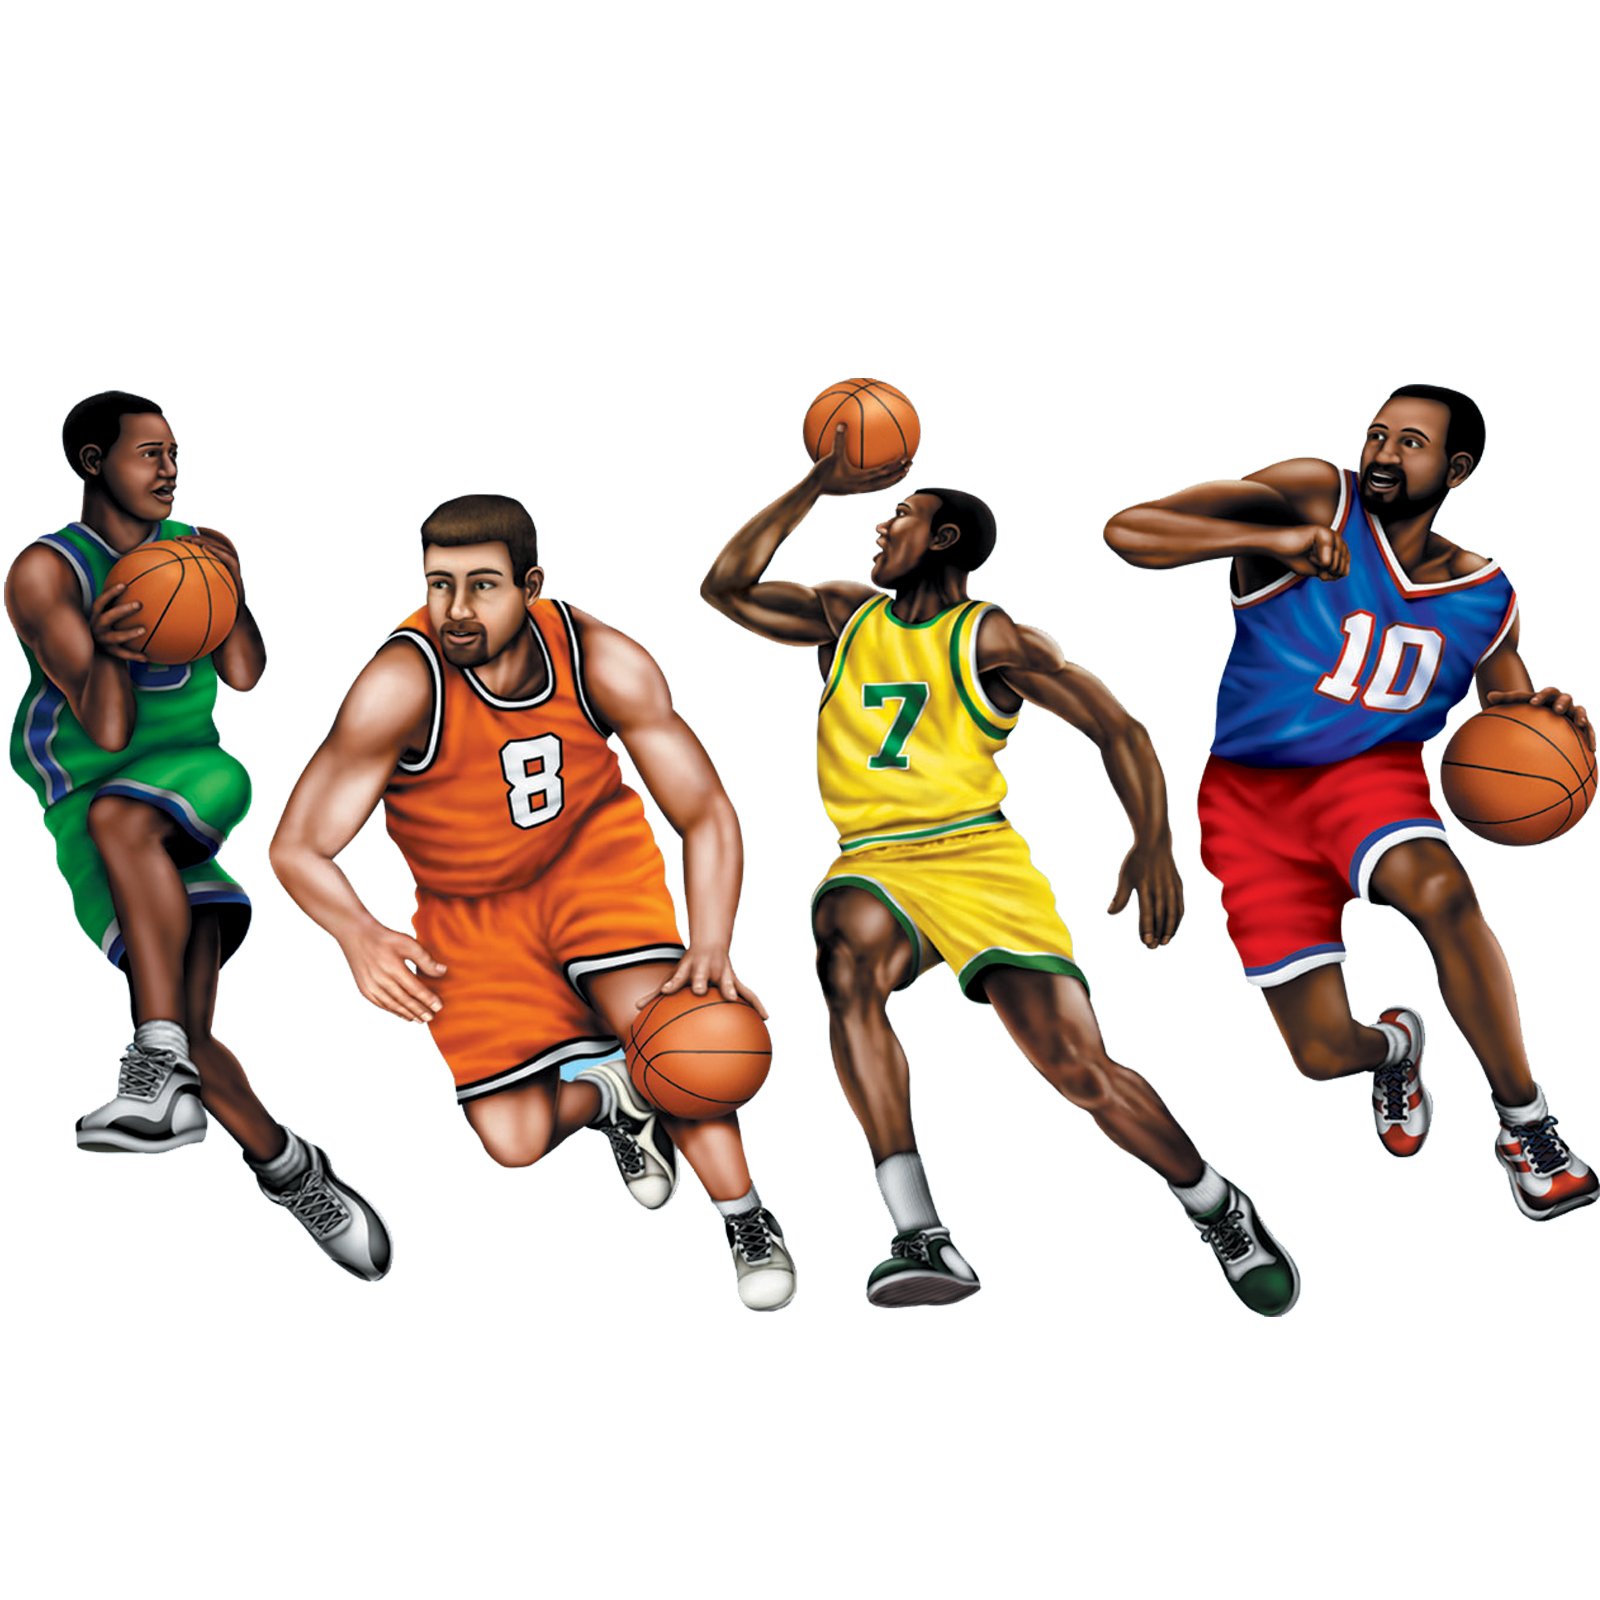 Free Cartoon Playing Basketball, Download Free Cartoon Playing